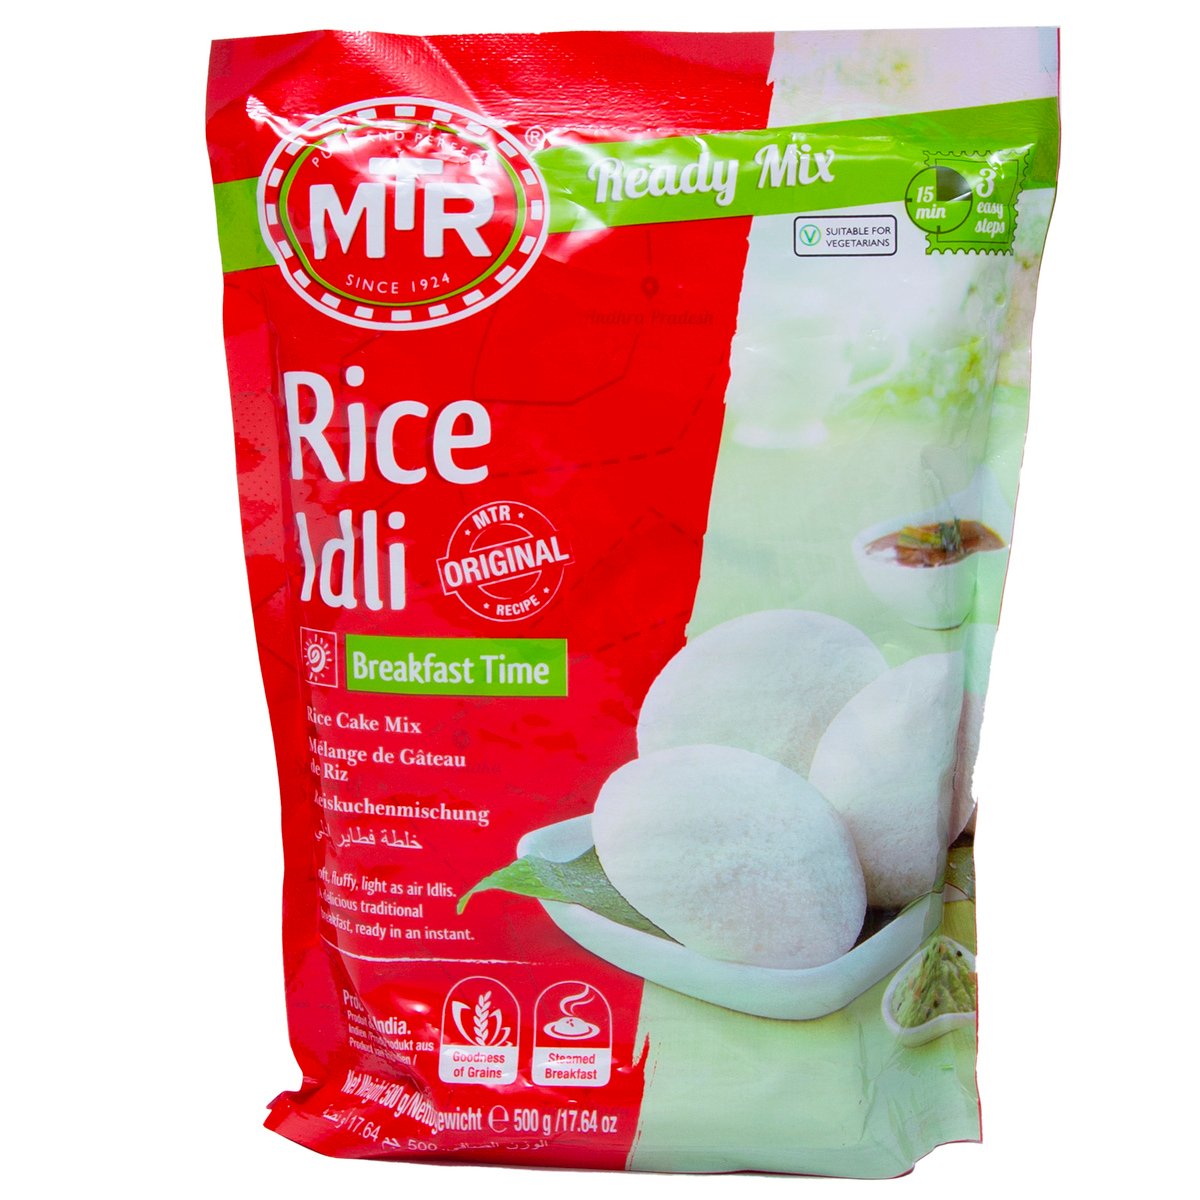 MTR Rice Idli Breakfast Mix, 500 g